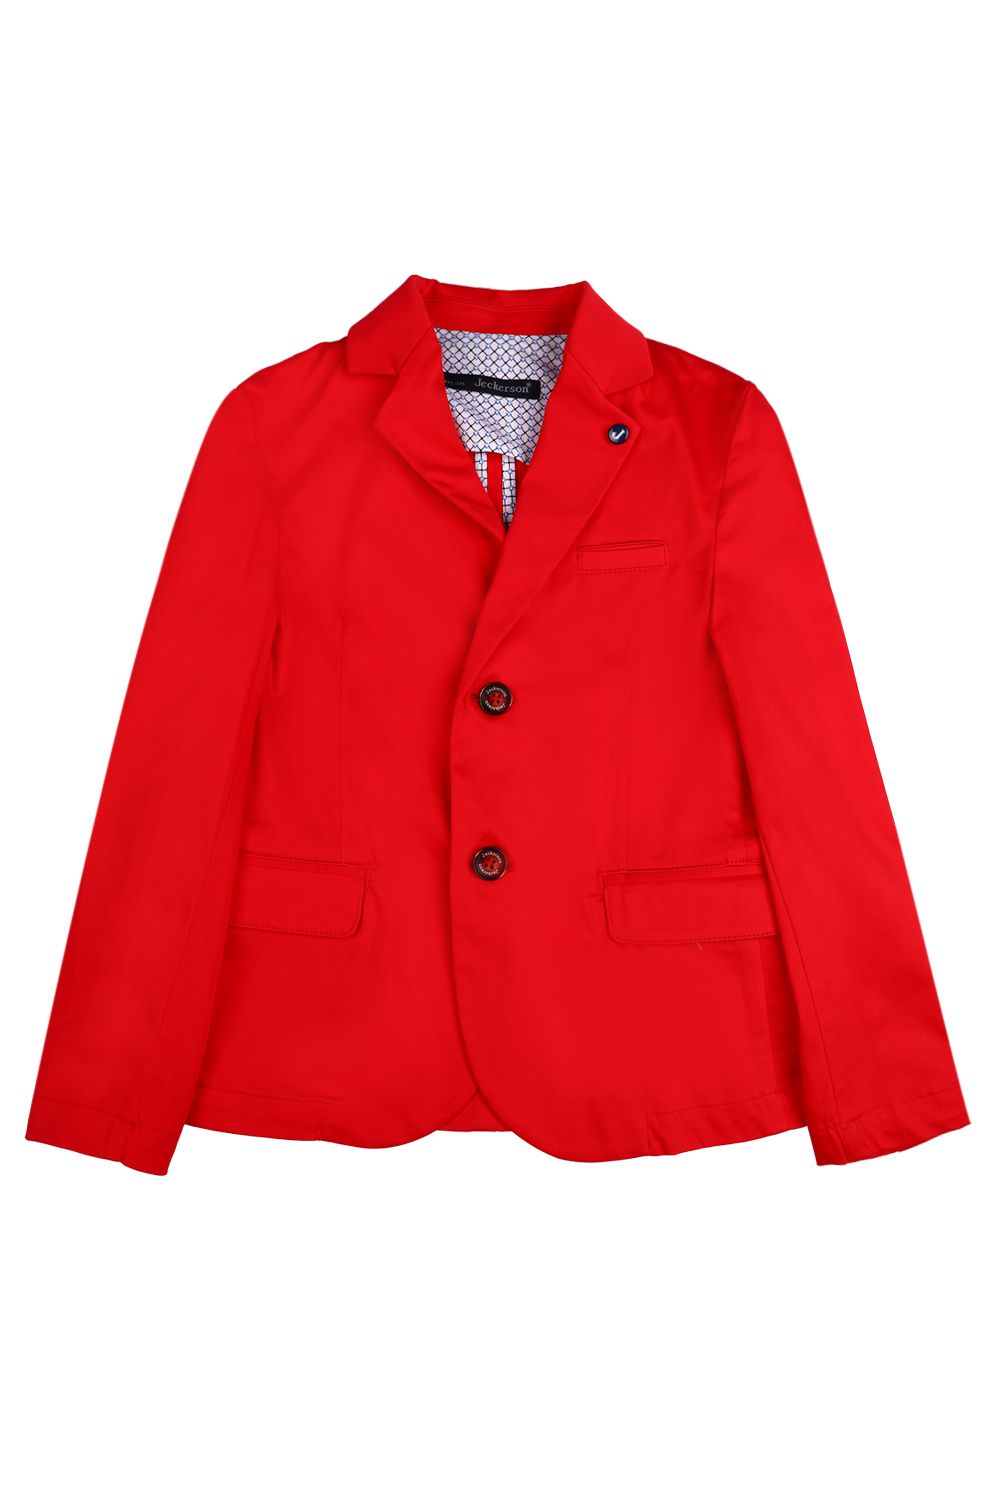 Пиджак Jeckerson, размер 128, цвет красный J1020 - фото 1